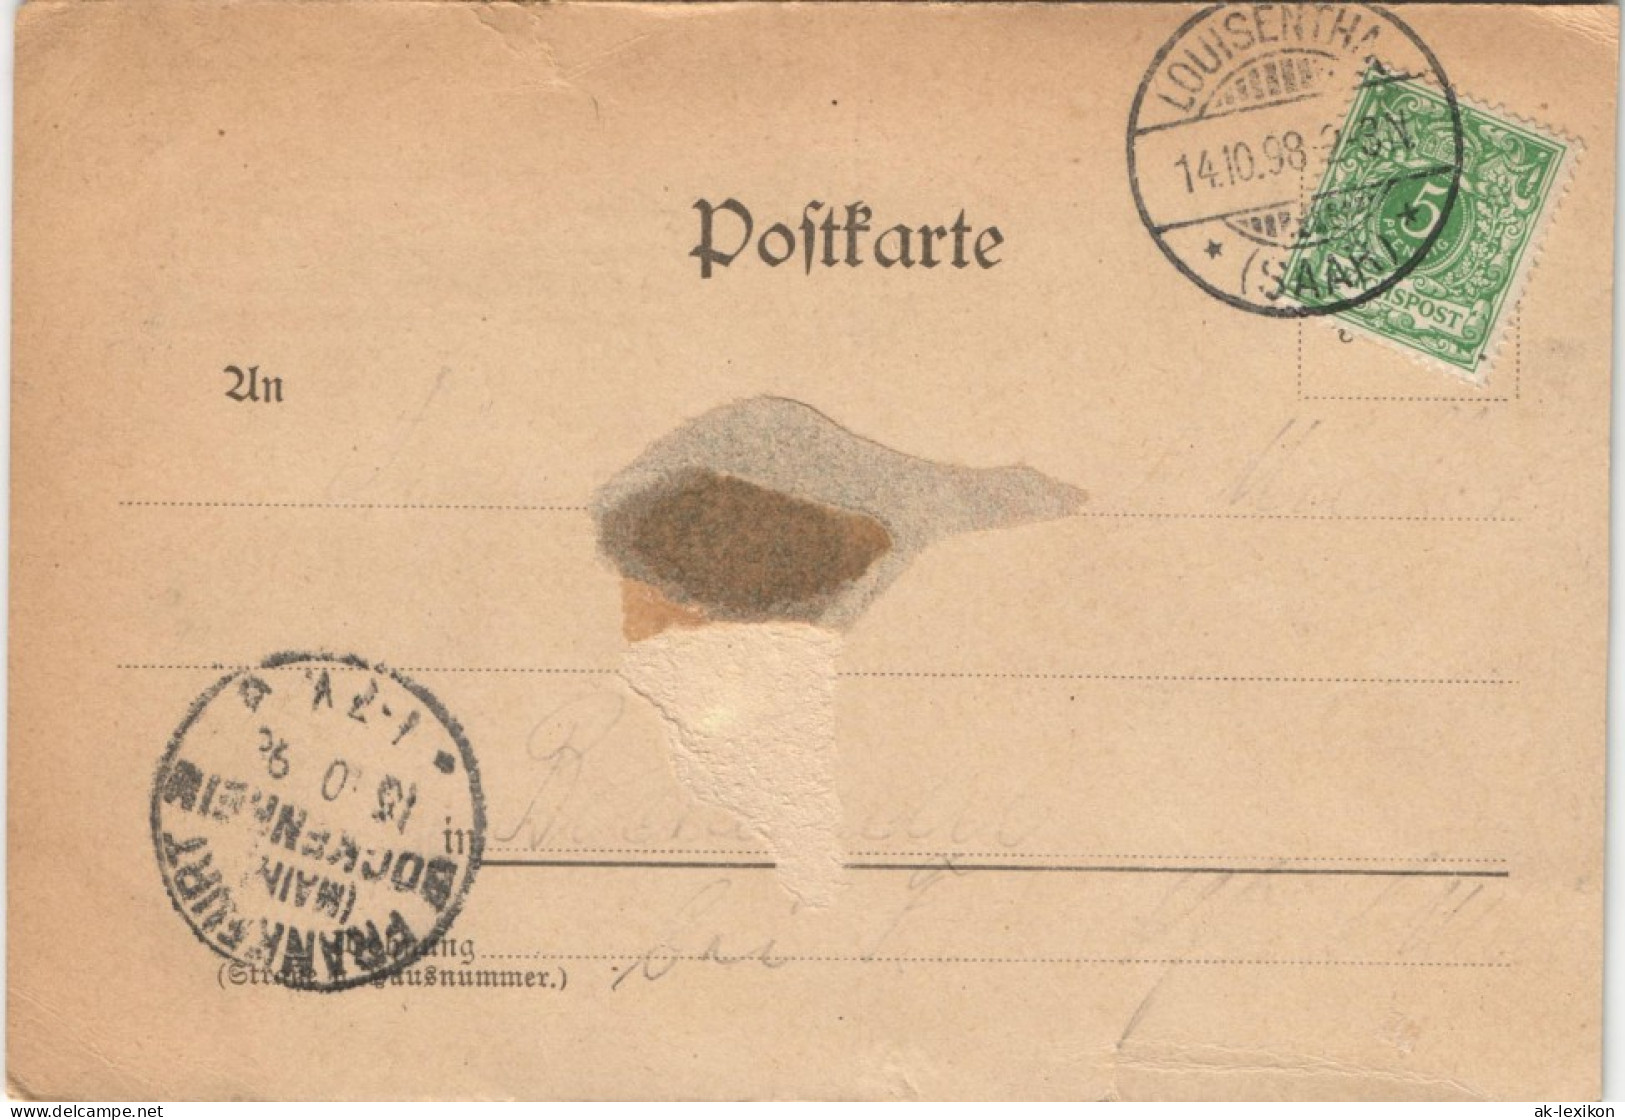 Spruchkarten/Gedichte Perlen Deutscher Poesie - Frühlingstraum 1898 - Philosophie & Pensées